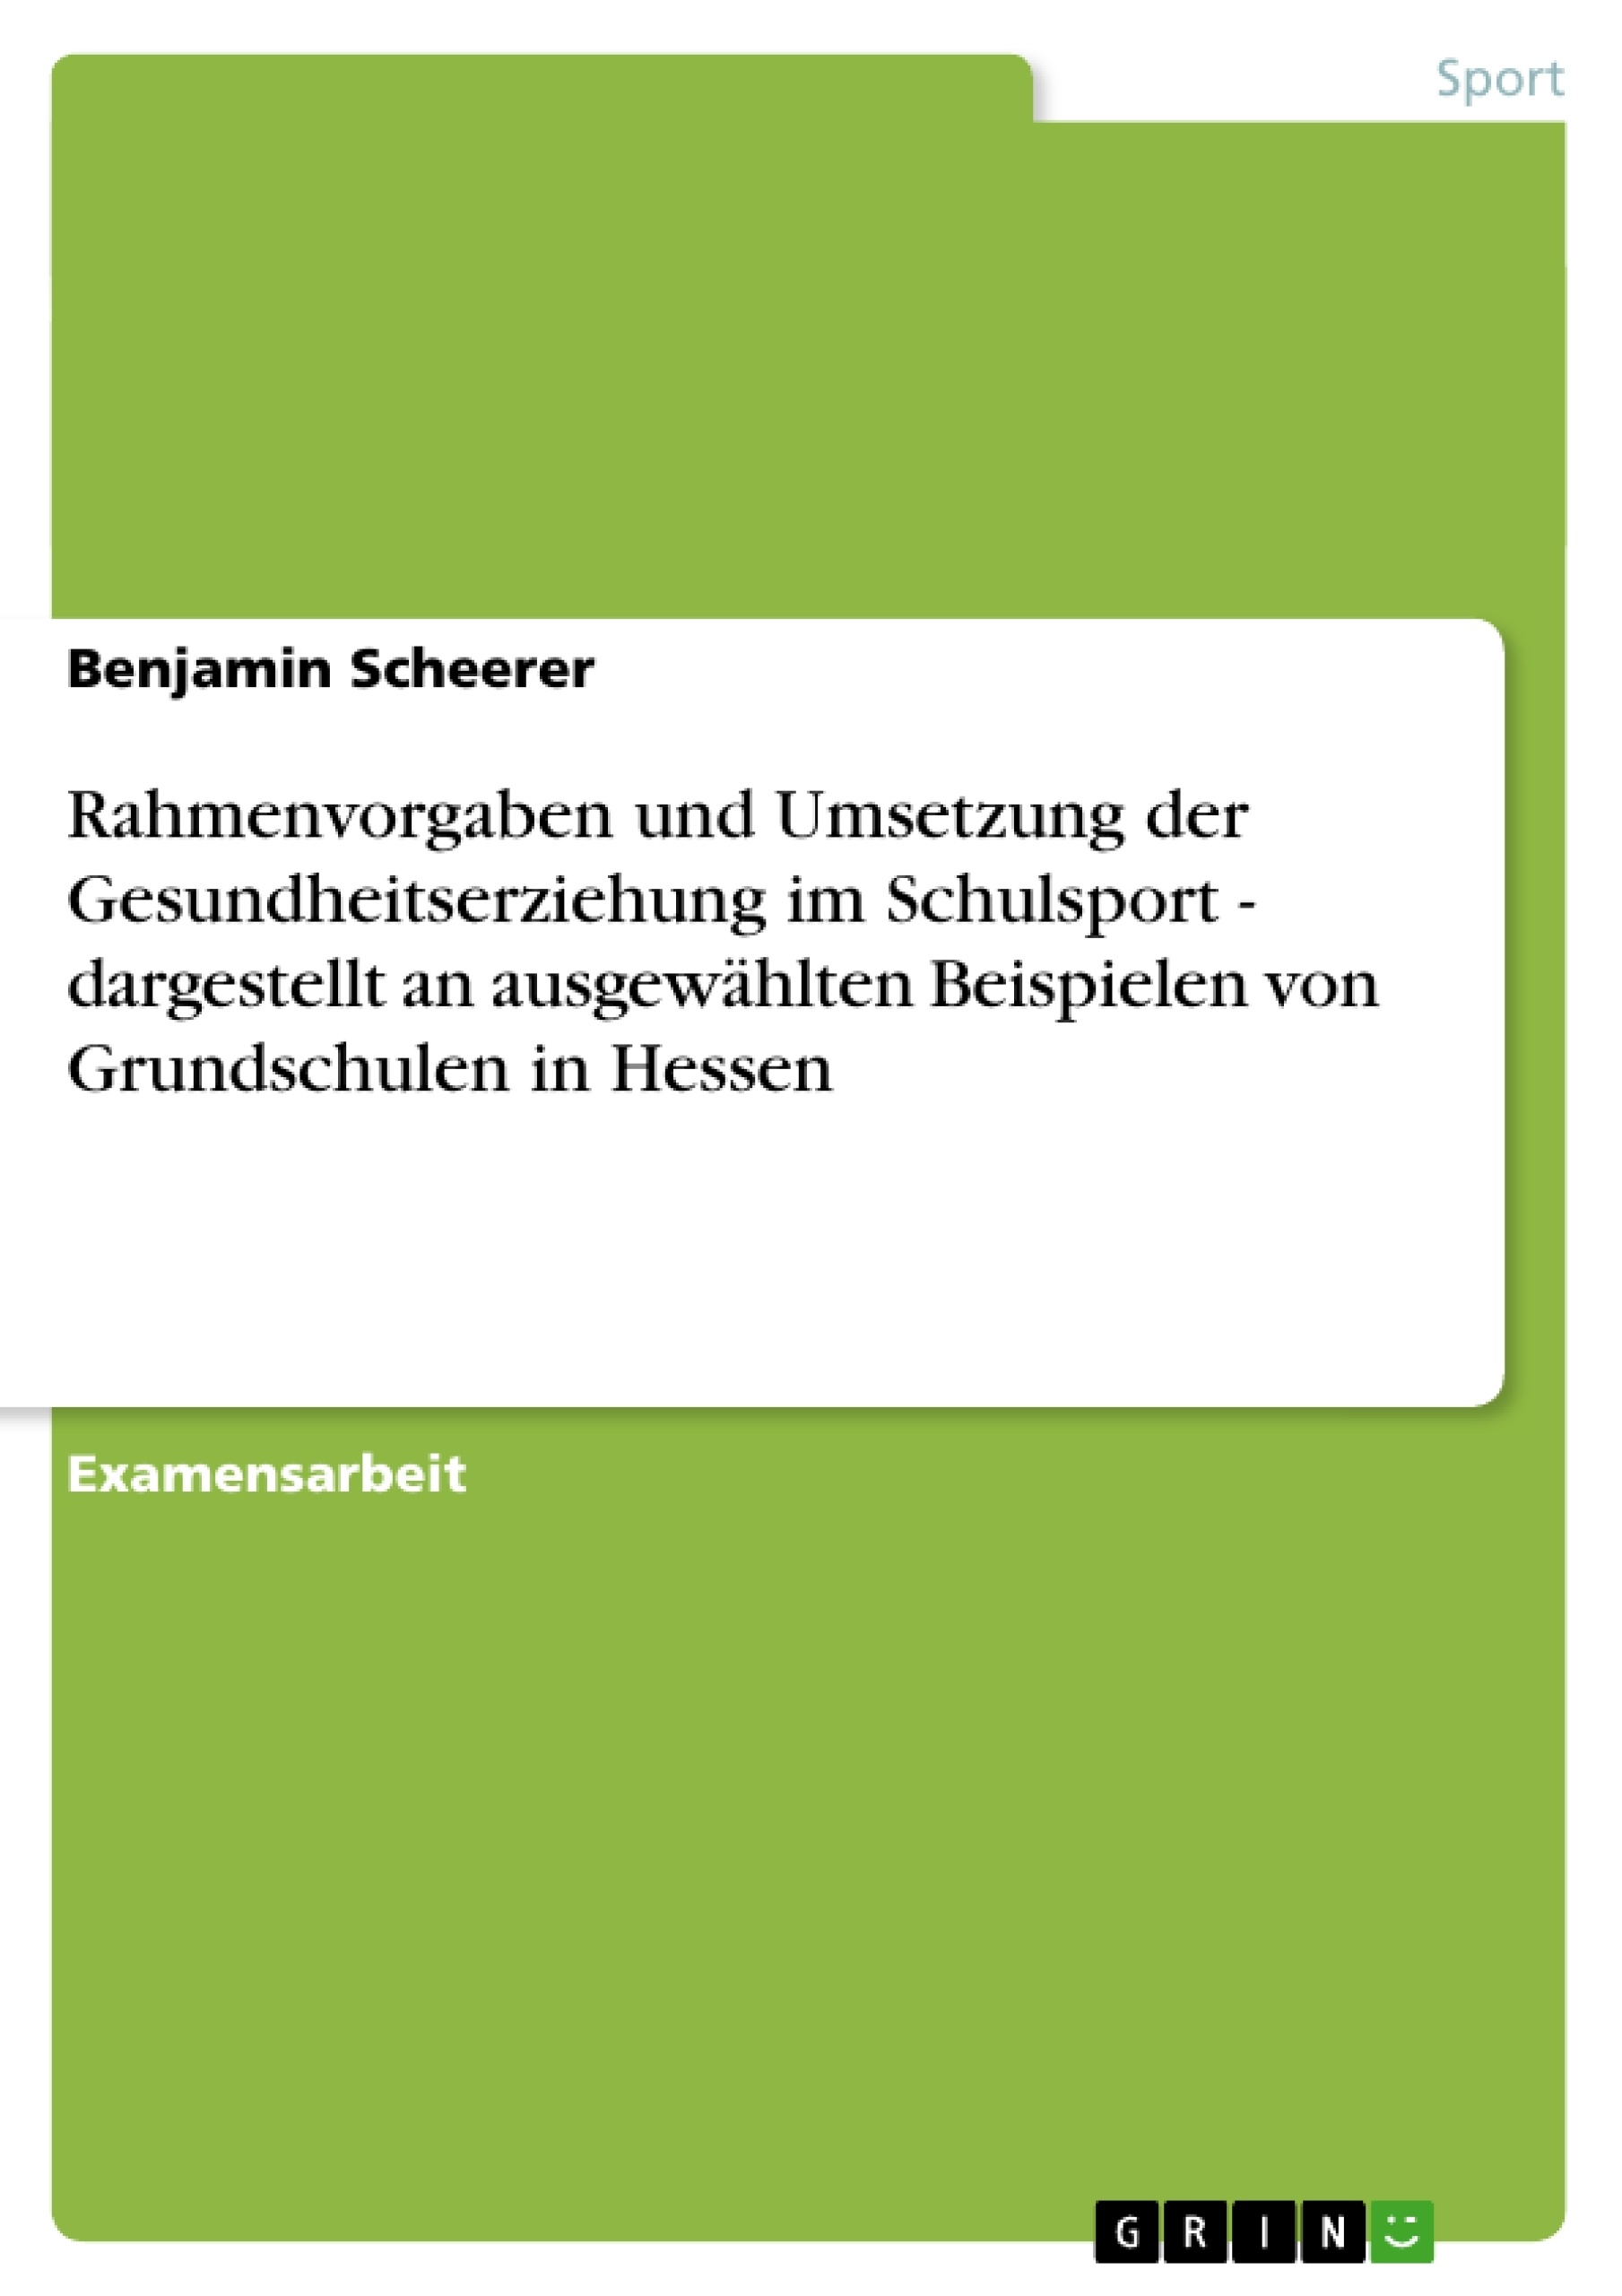 Title: Rahmenvorgaben und Umsetzung der Gesundheitserziehung im Schulsport - dargestellt an ausgewählten Beispielen von Grundschulen in Hessen